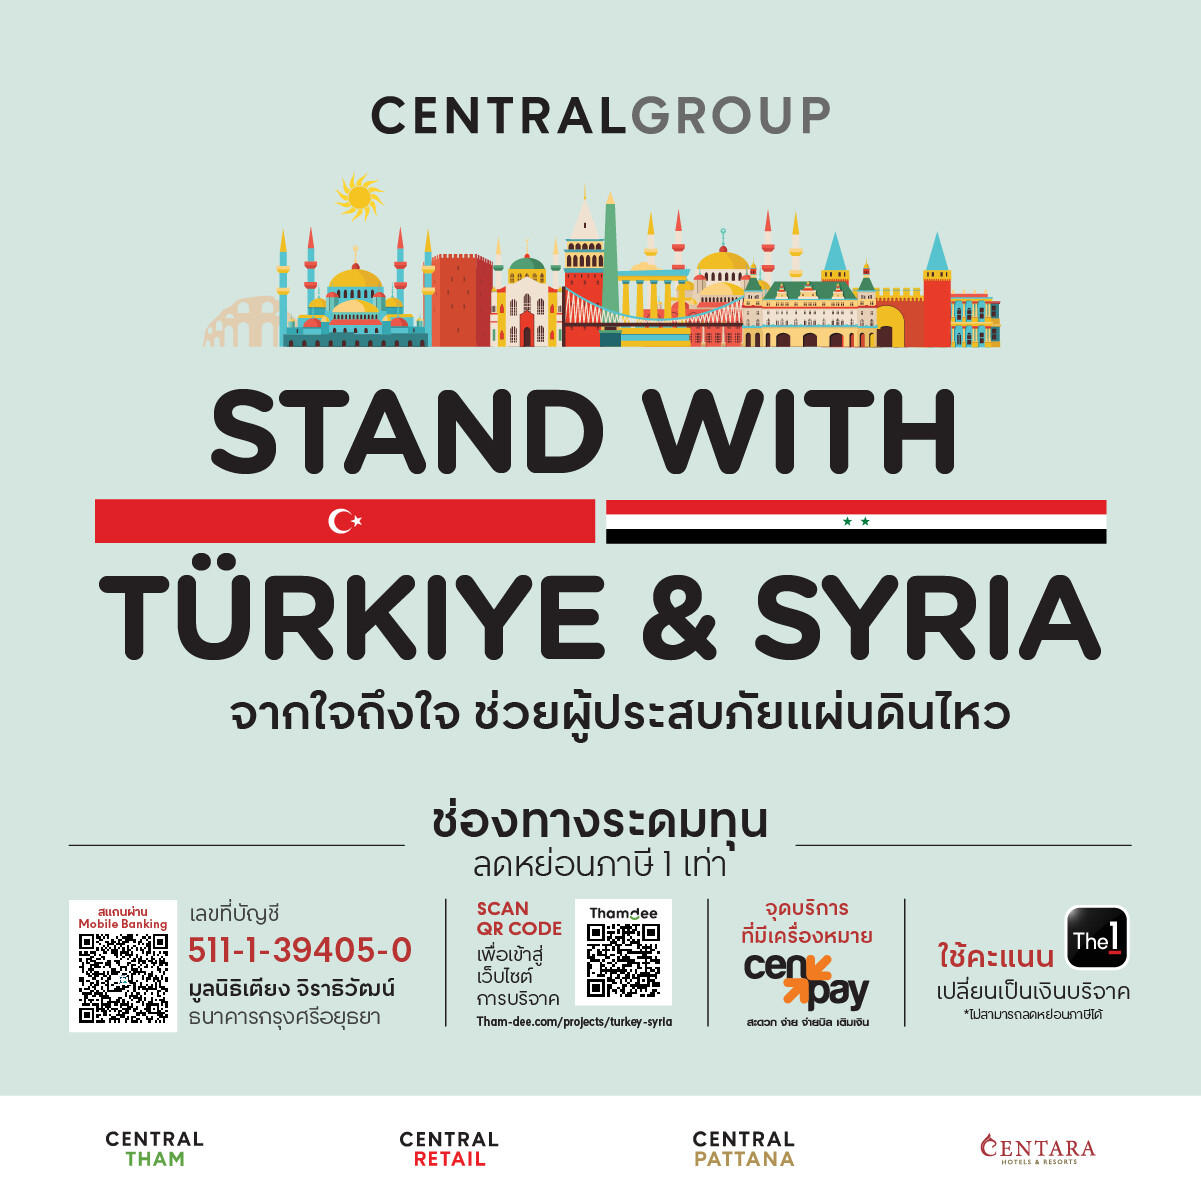 กลุ่มเซ็นทรัล รวมพลังธุรกิจในเครือ เปิดแคมเปญระดมทุน "Stand with Tuerkiye & Syria" จากใจถึงใจ ช่วยผู้ประสบภัยแผ่นดินไหว ประเทศทูร์เคีย (ตุรกี) และซีเรีย